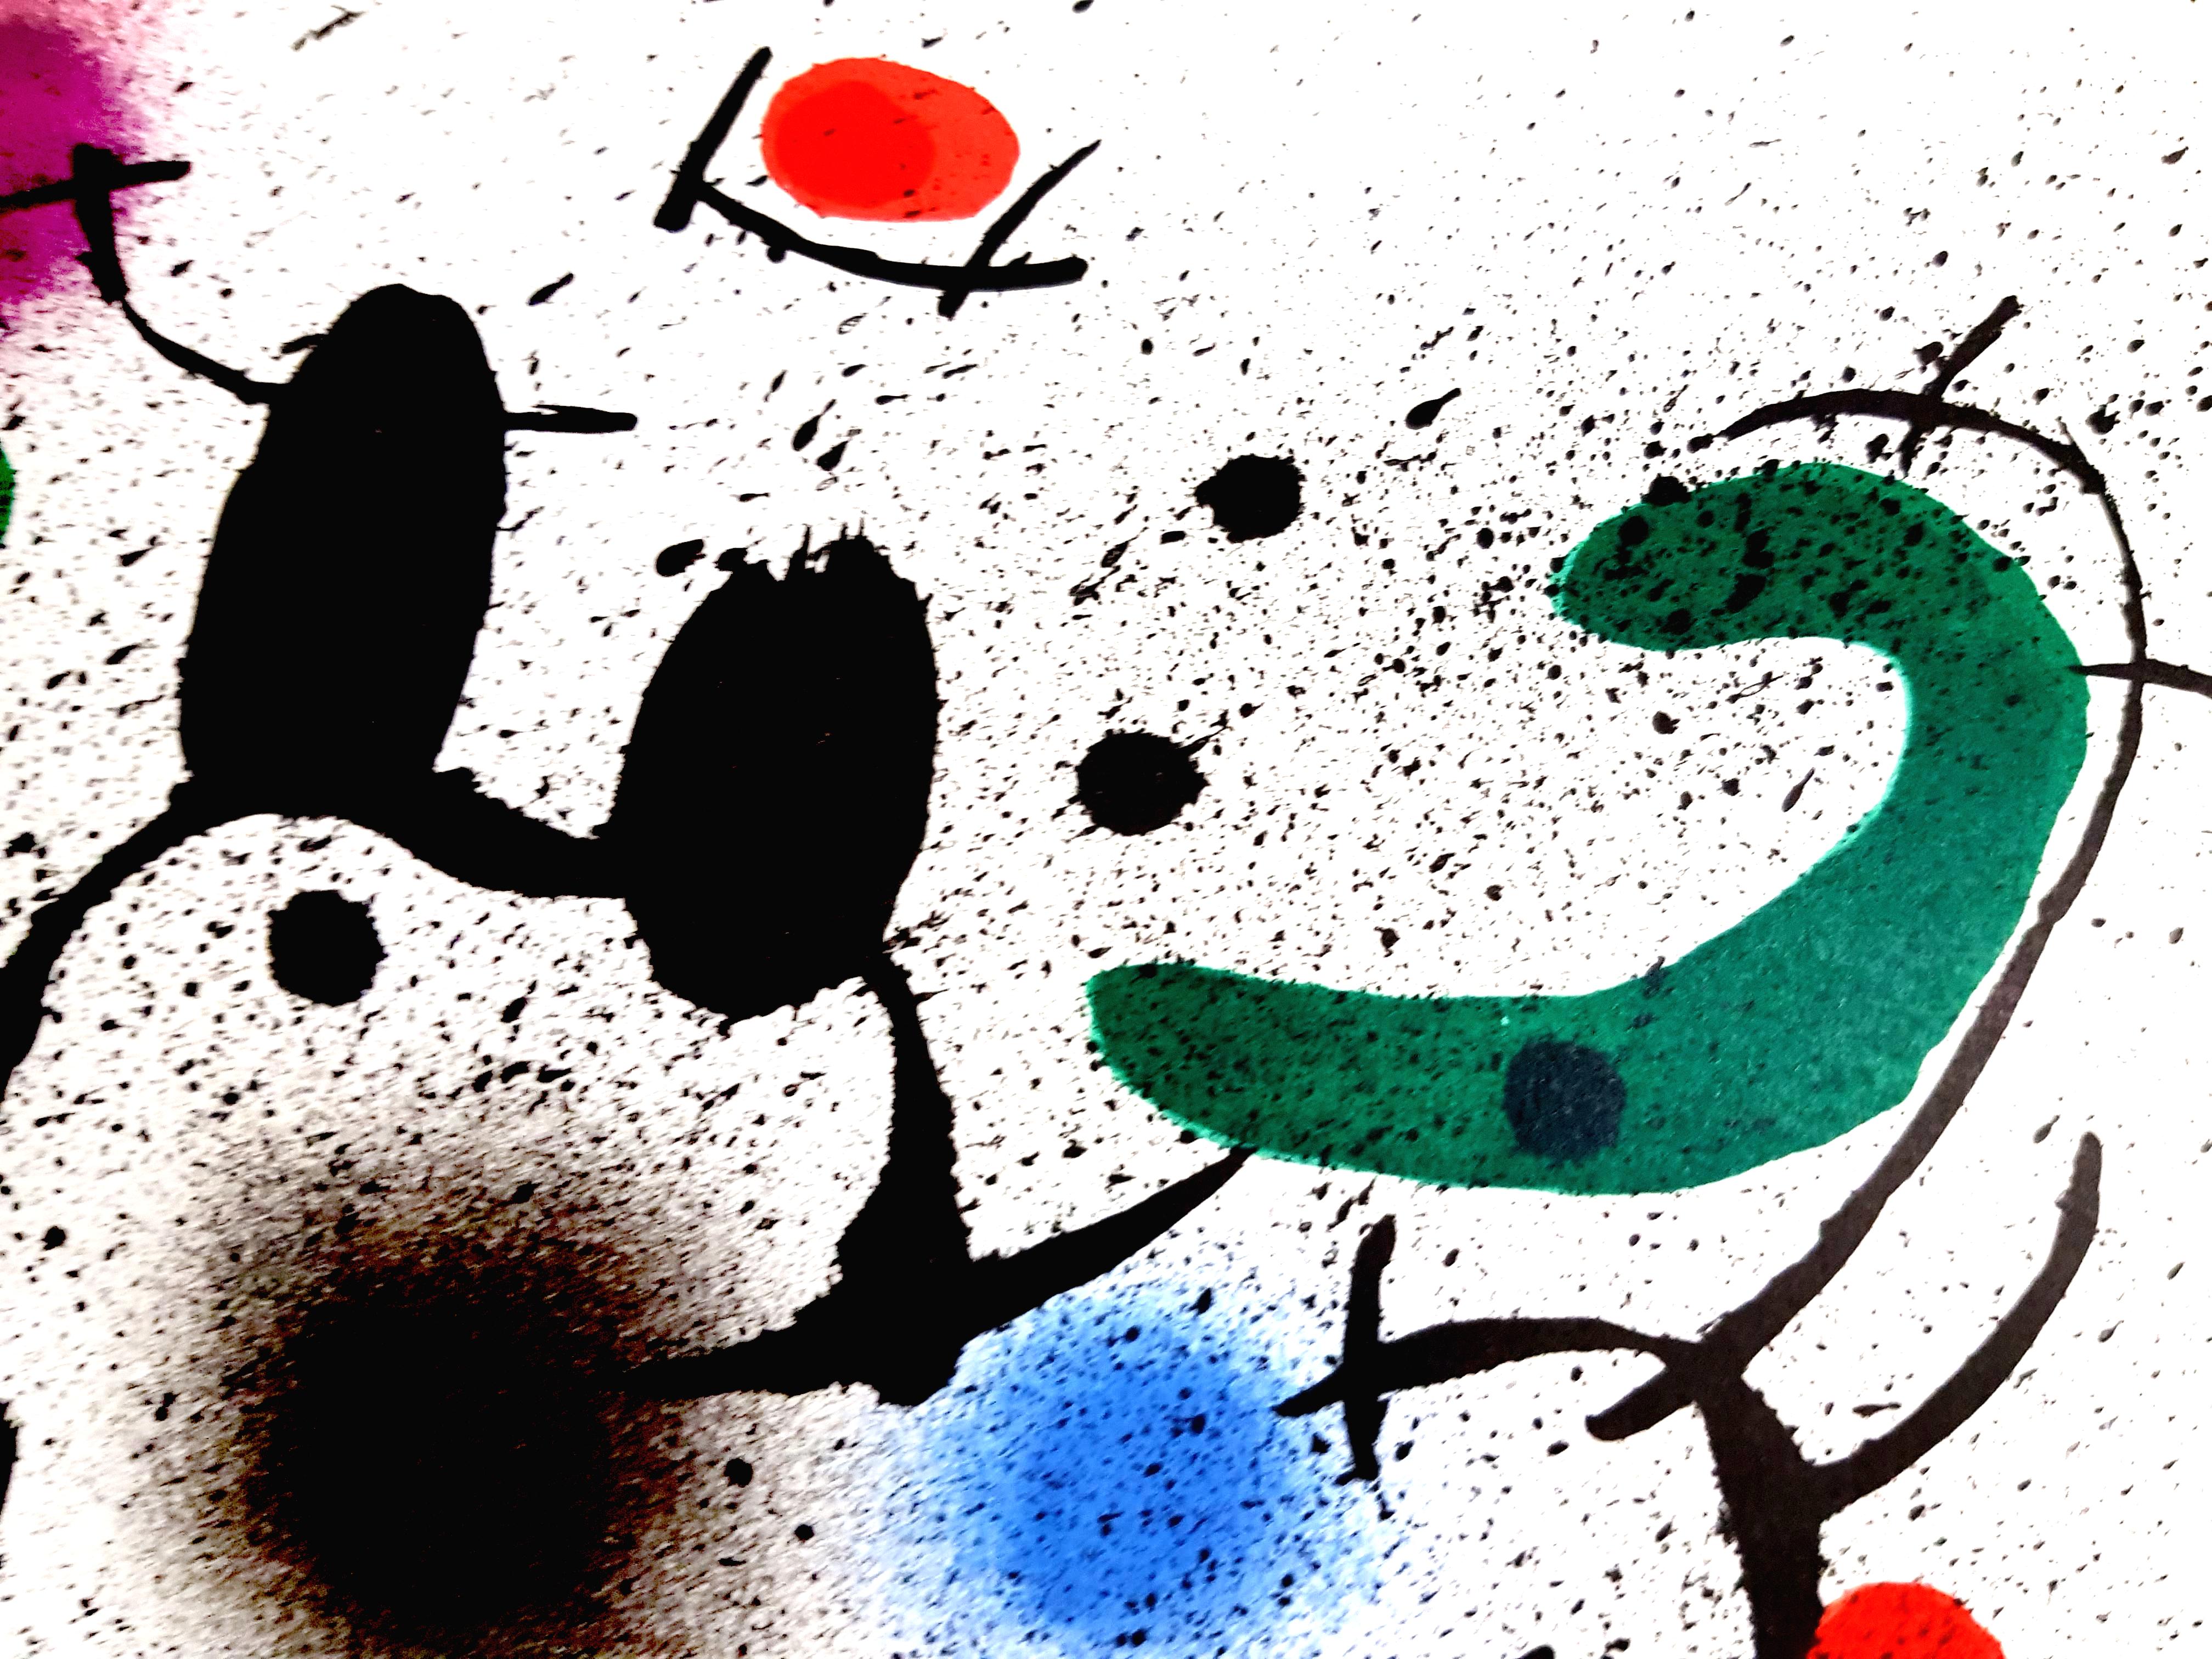 Joan Miro Miro Original Abstrakte Lithographie
Künstler: Joan Miro
Medium: Original-Lithographie auf Rives-Vellum
Mappe: Miro Lithographe
Jahr: 1972
Auflage: 5000
Bildgröße: 10